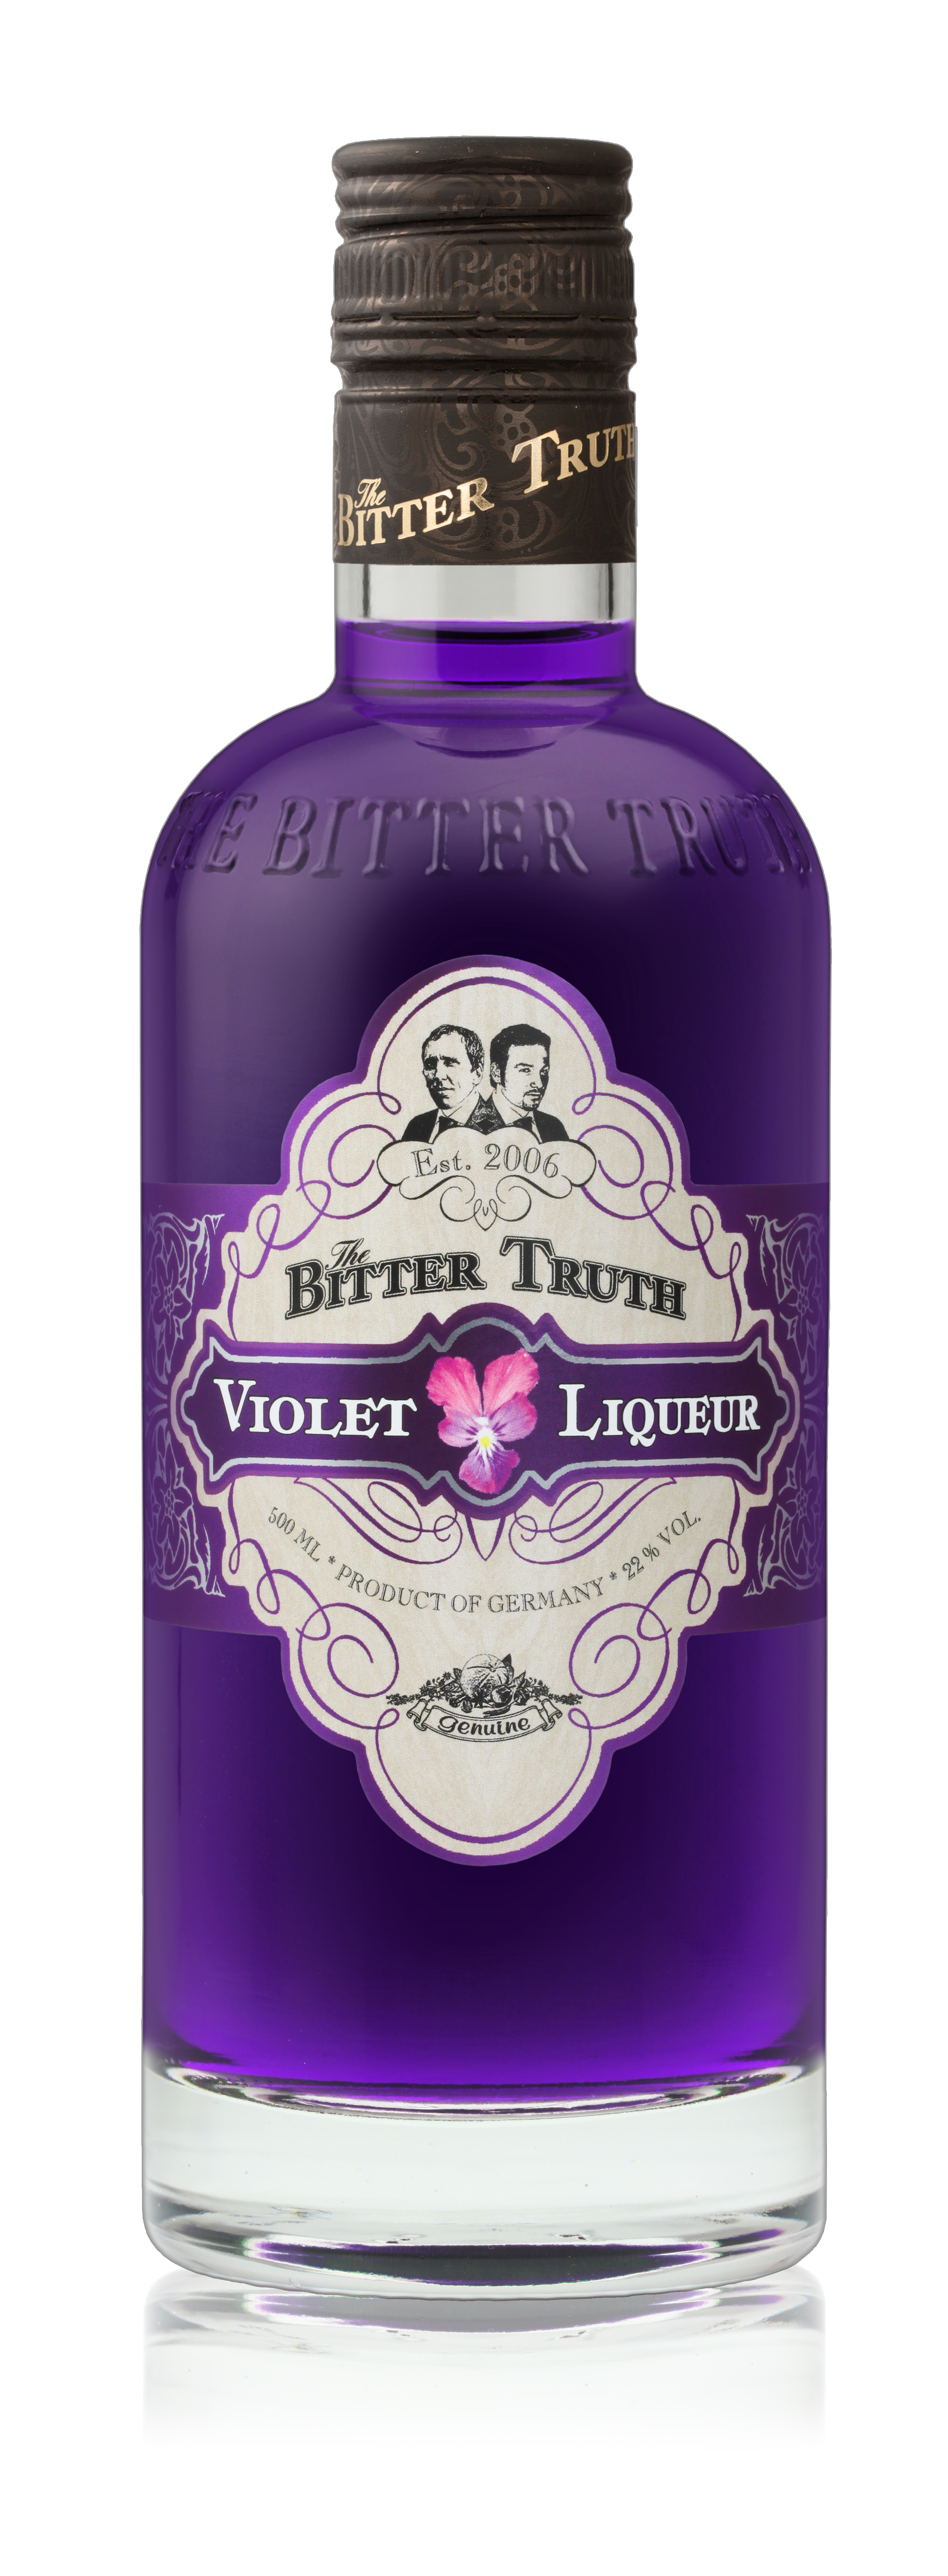 Bottle Shots The Bitter Truth Liqueur & Spirits